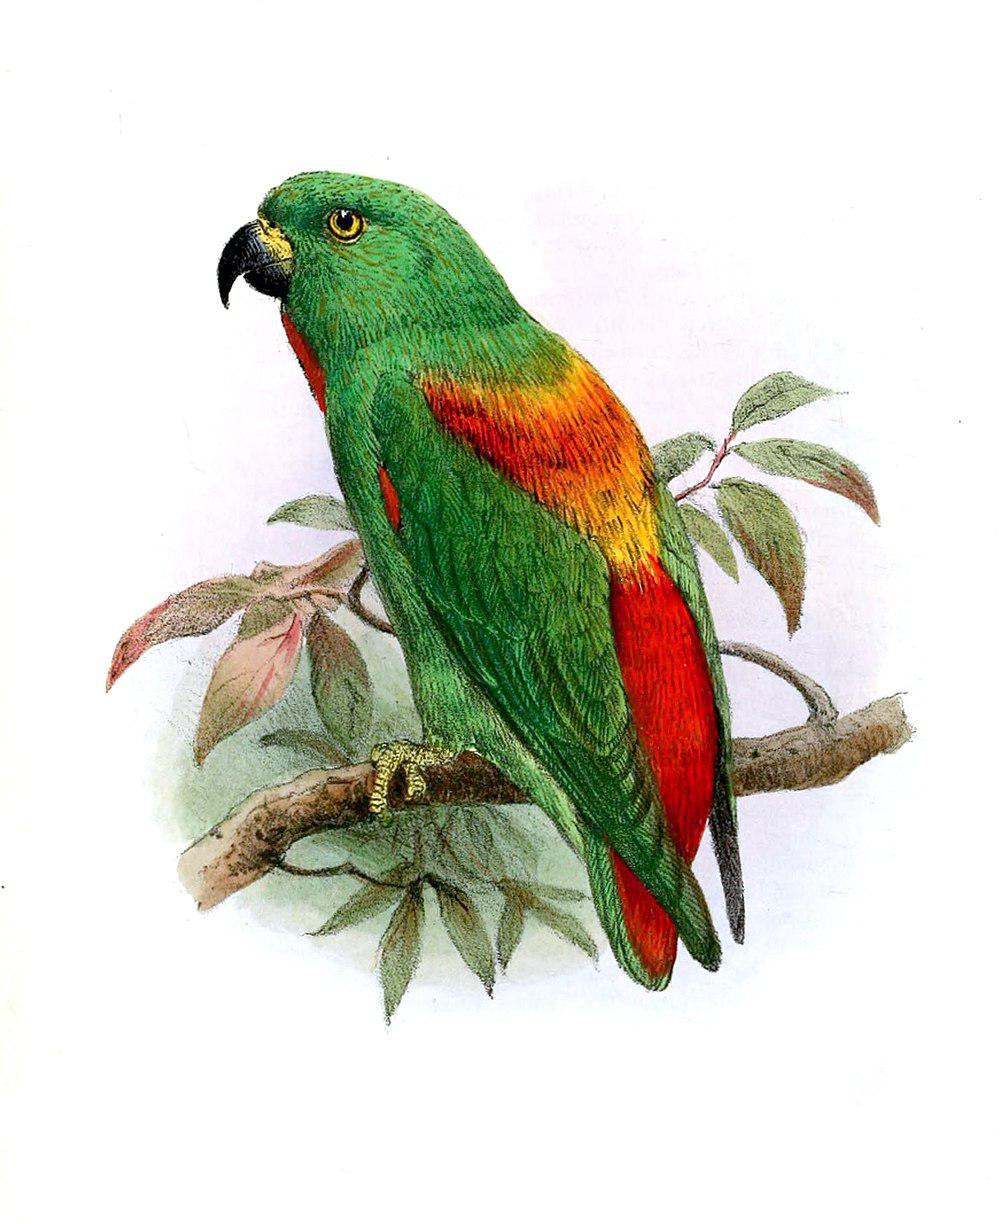 红背短尾鹦鹉 / Sula Hanging Parrot / Loriculus sclateri